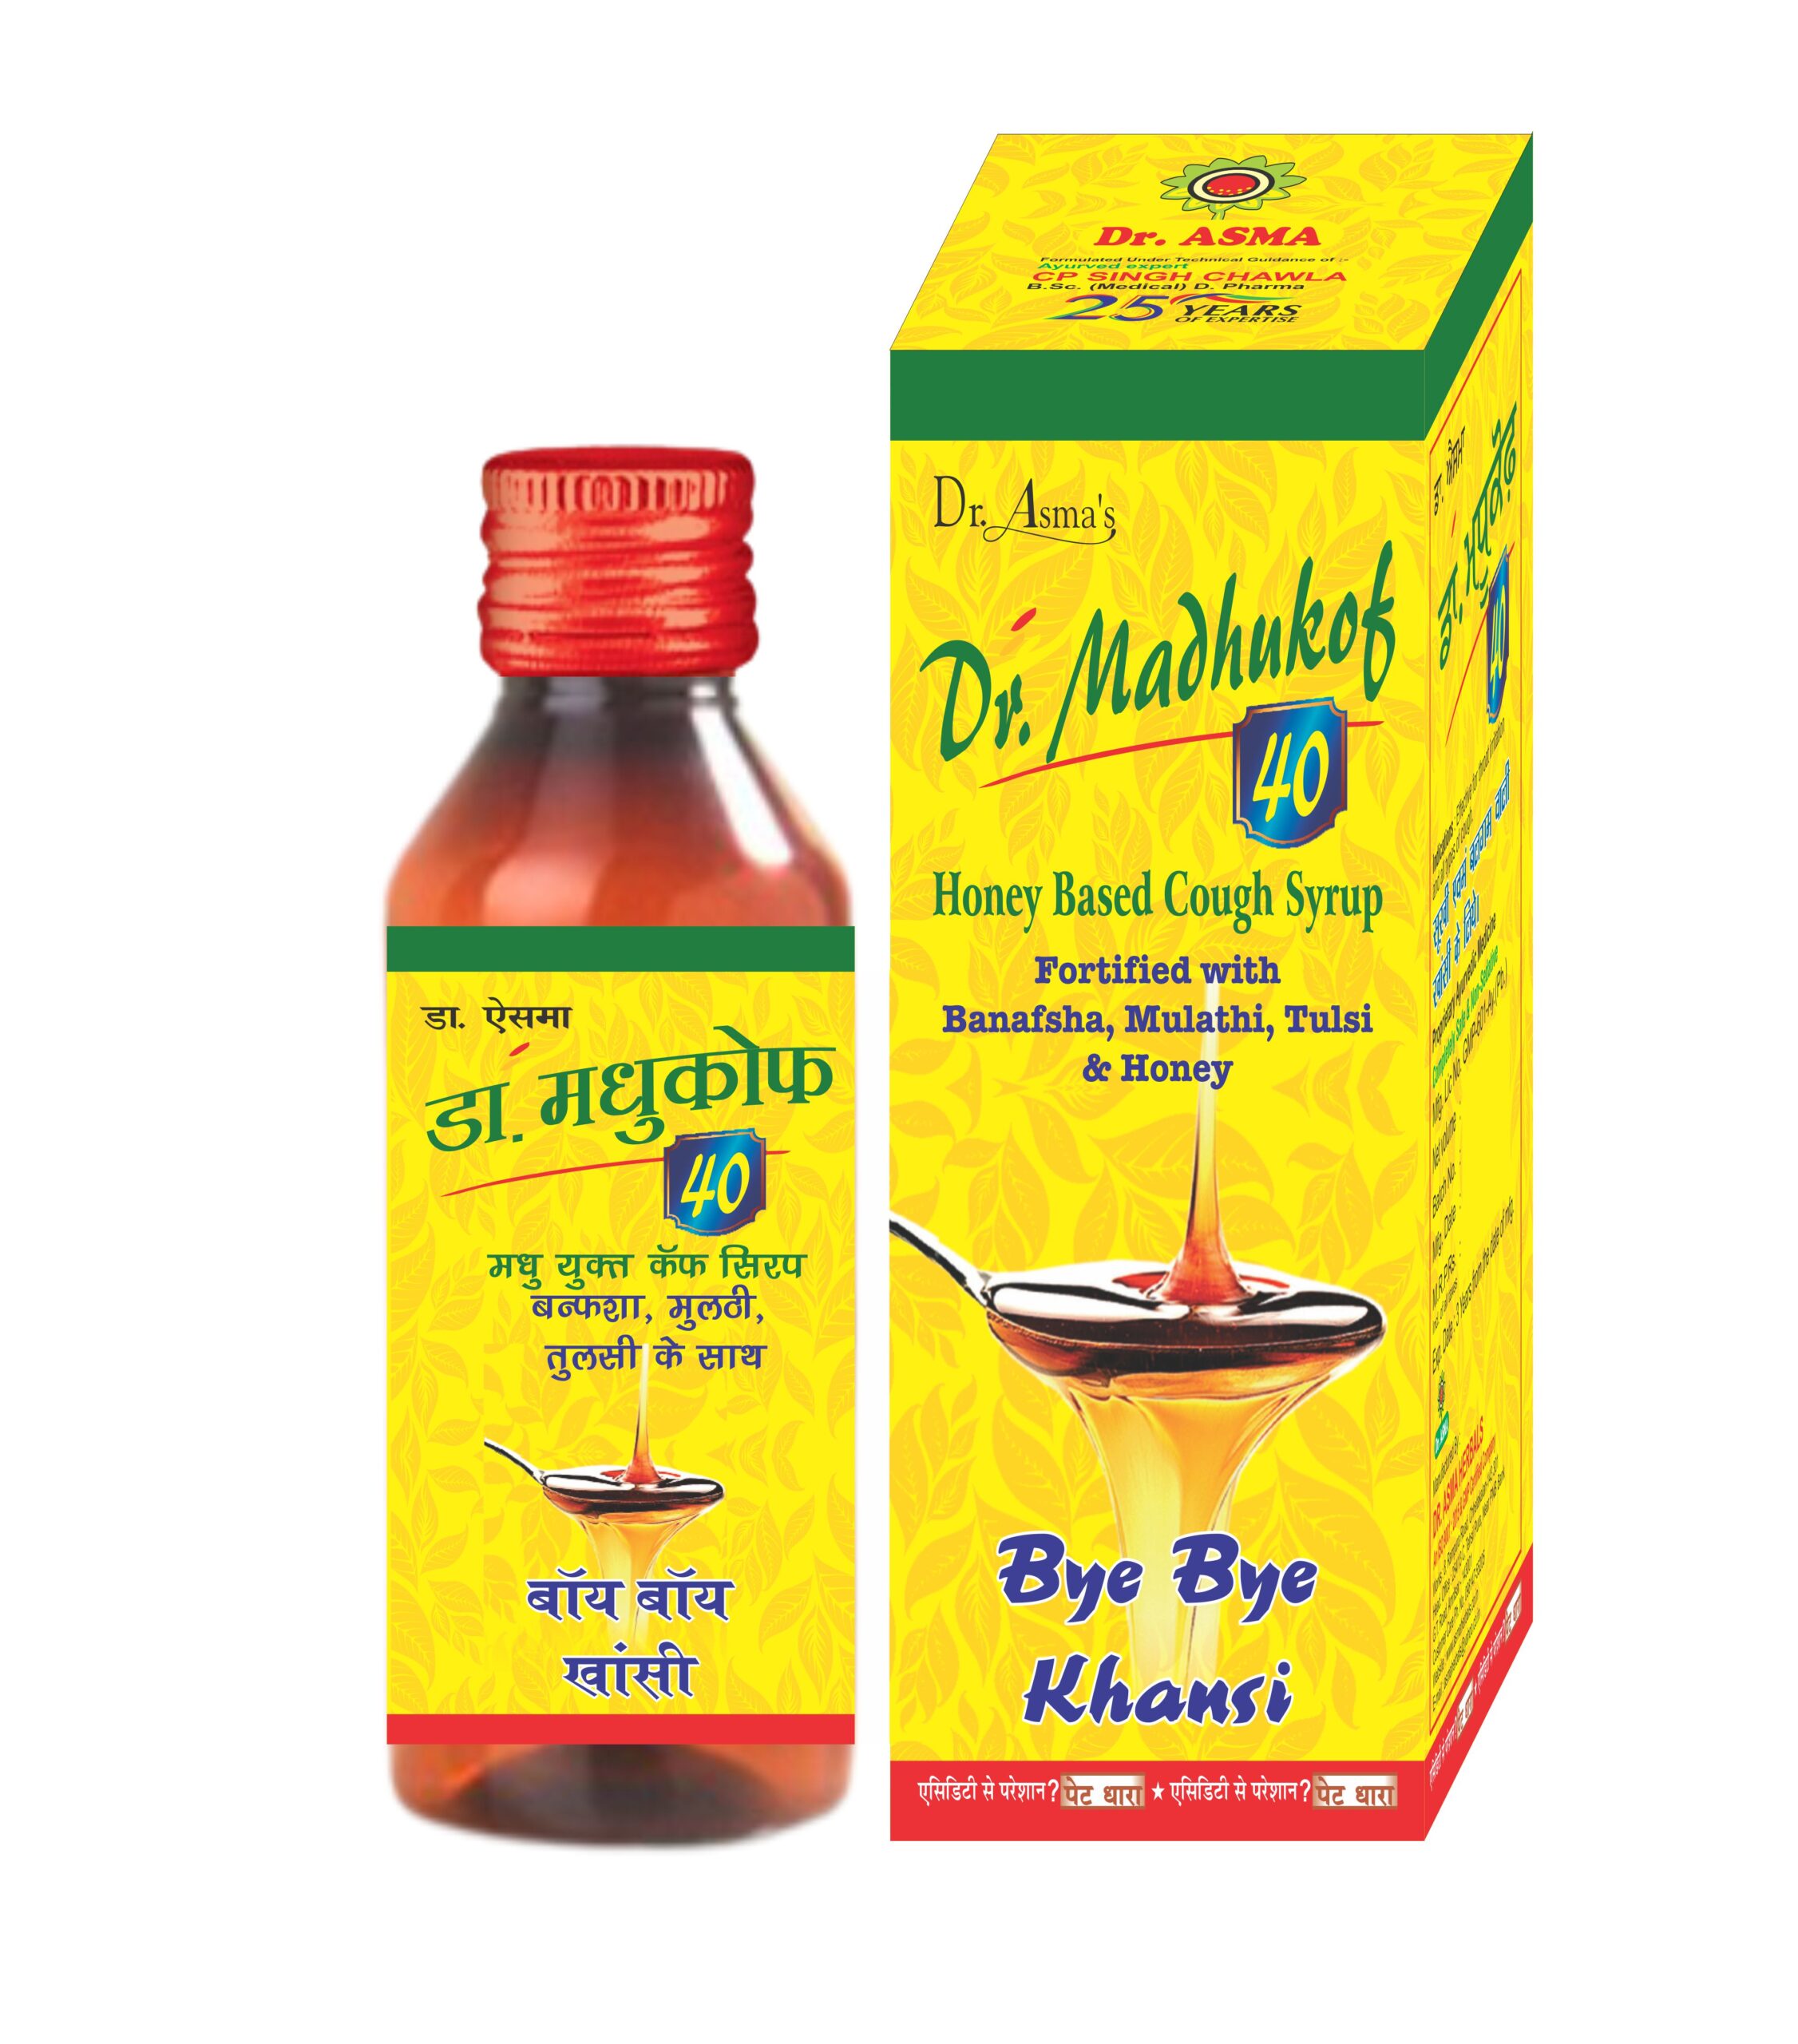 dr madhukof ayurvedic cough syrup for cold flu khaansi khansi kasni kasrex